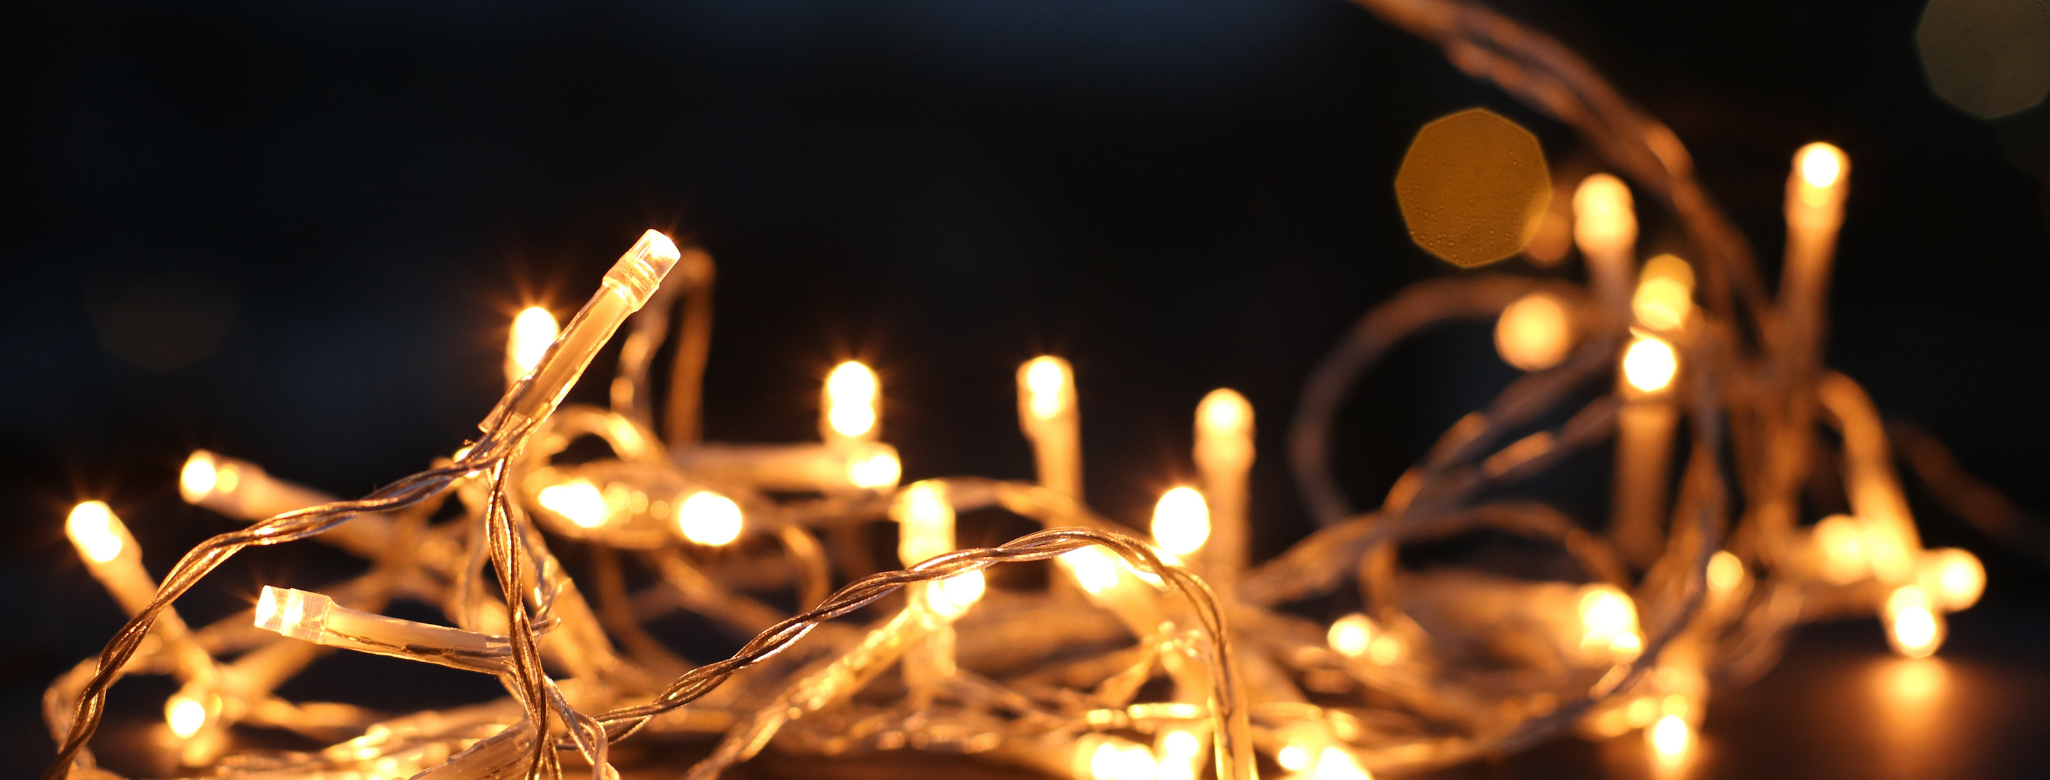 Scopri di più sull'articolo Luci di Natale: idee per illuminare casa